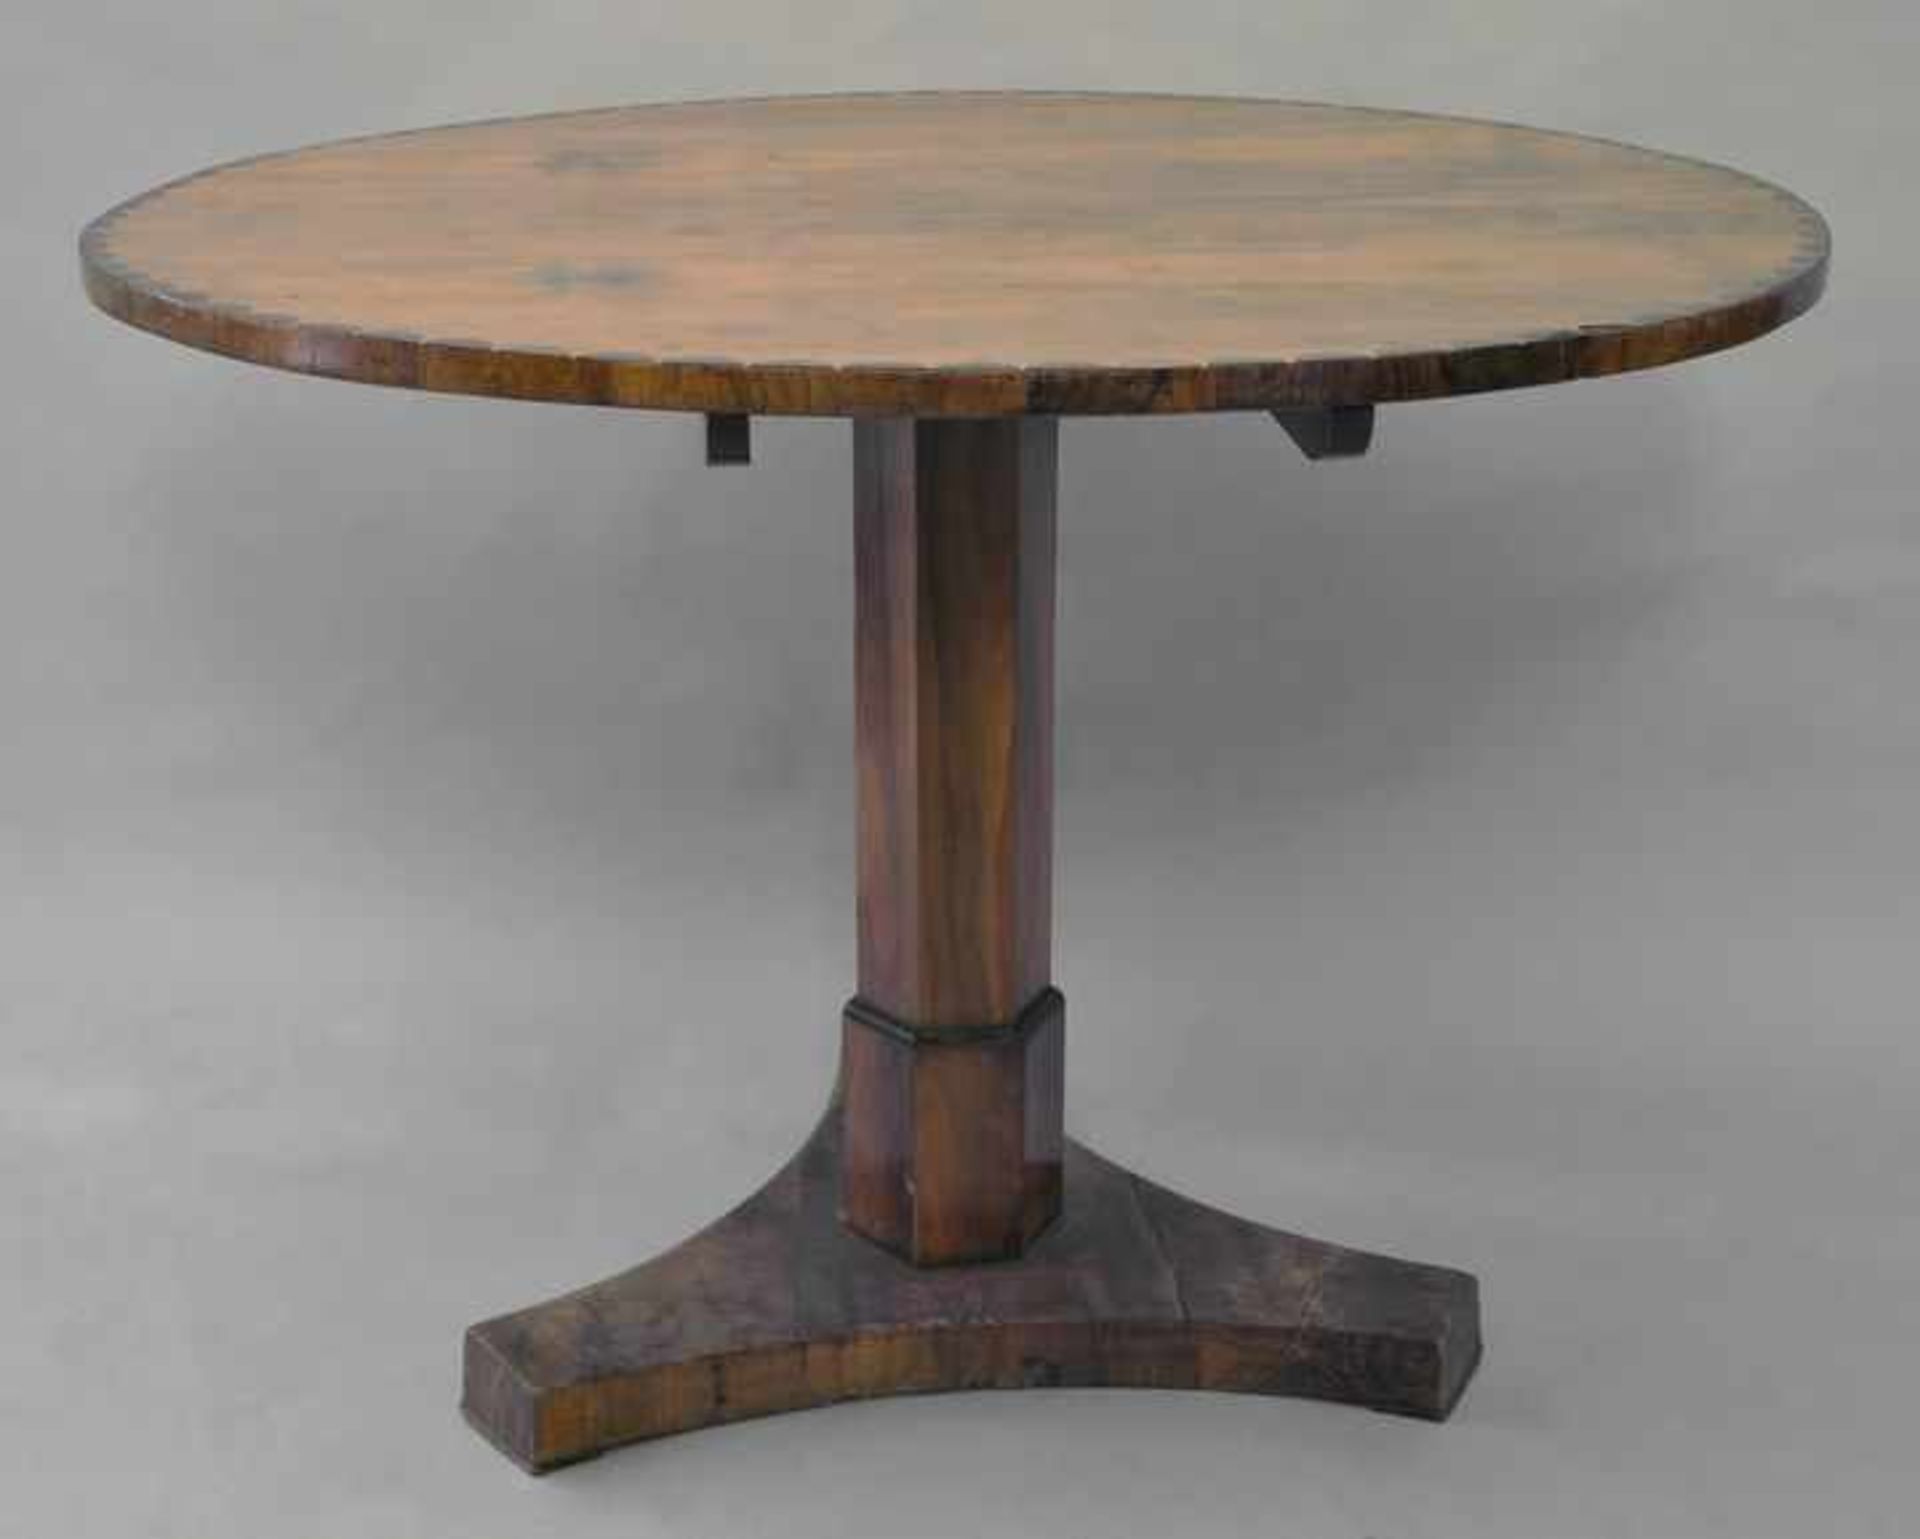 Tisch, um 1830 Nussbaum und Nusswurzel auf Nadelholz furniert, runde Platte mit Randintarsien, 6-